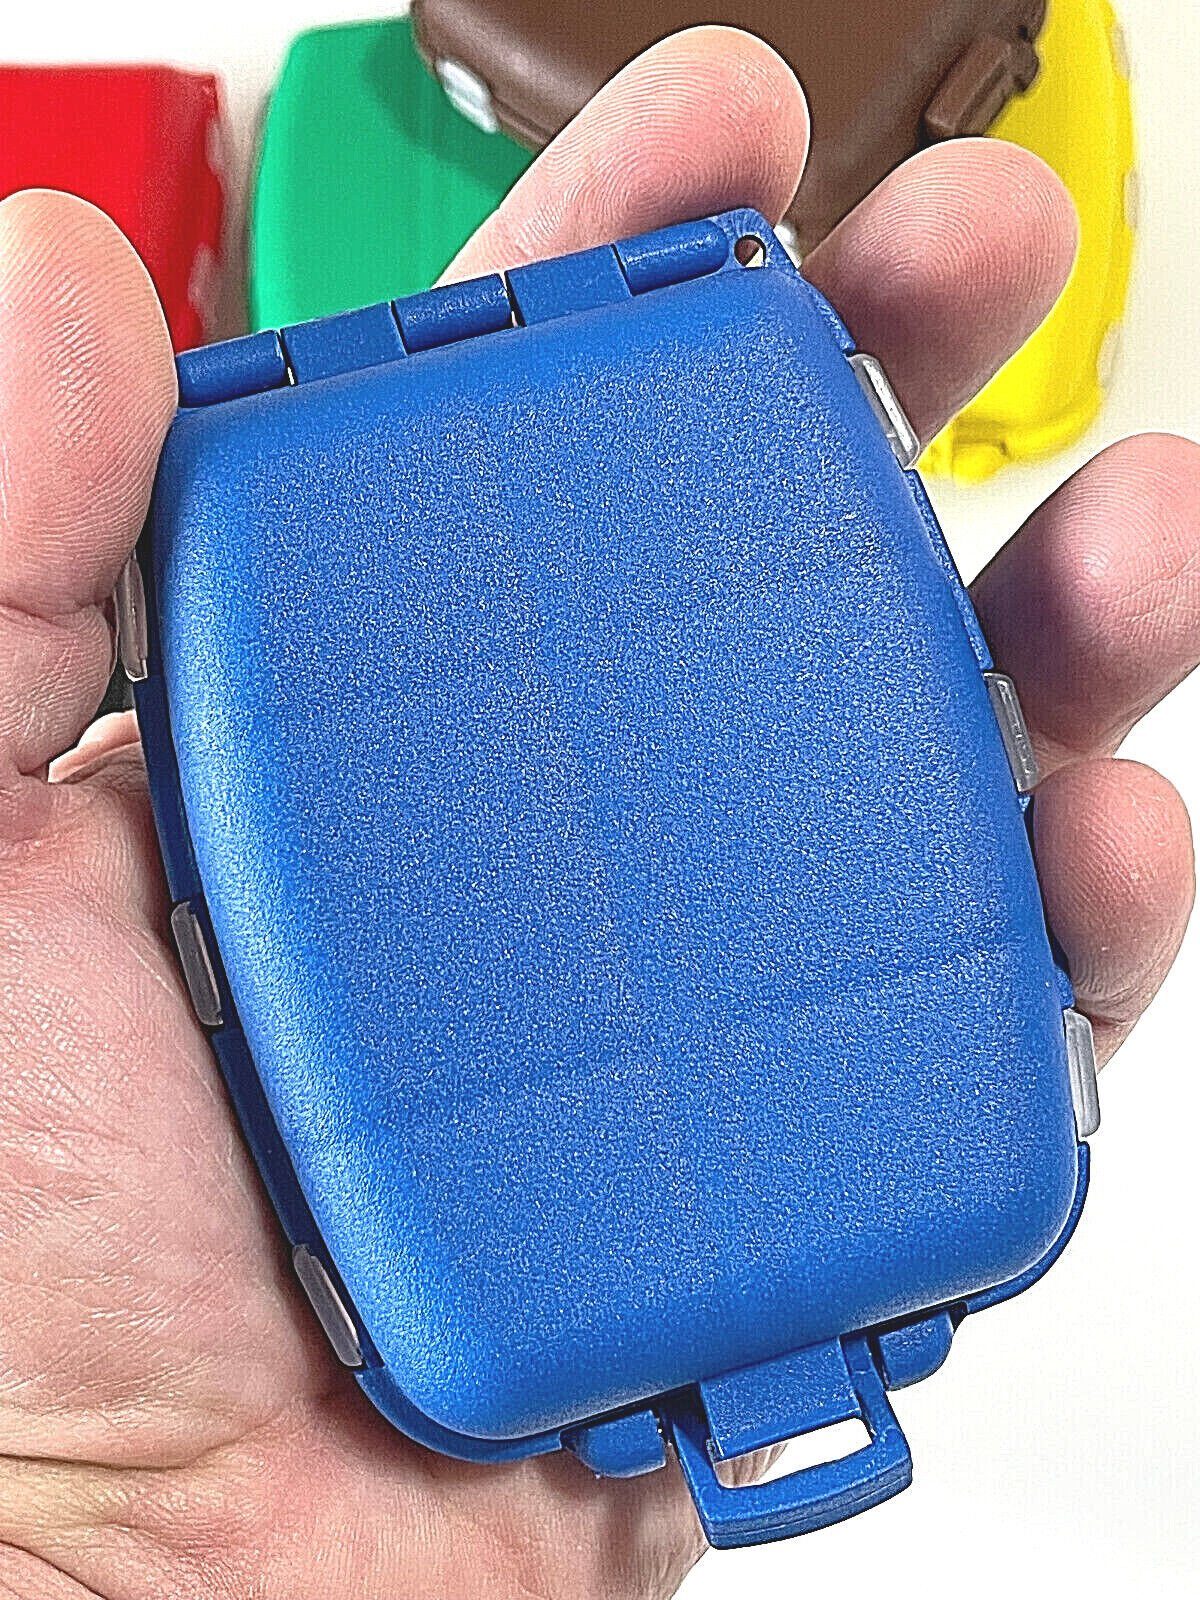 Haken Wirbel lose mit Grün Box Angelkoffer Kammerbehälter Anplast Zubehörbox Tackle S 12 Magnet